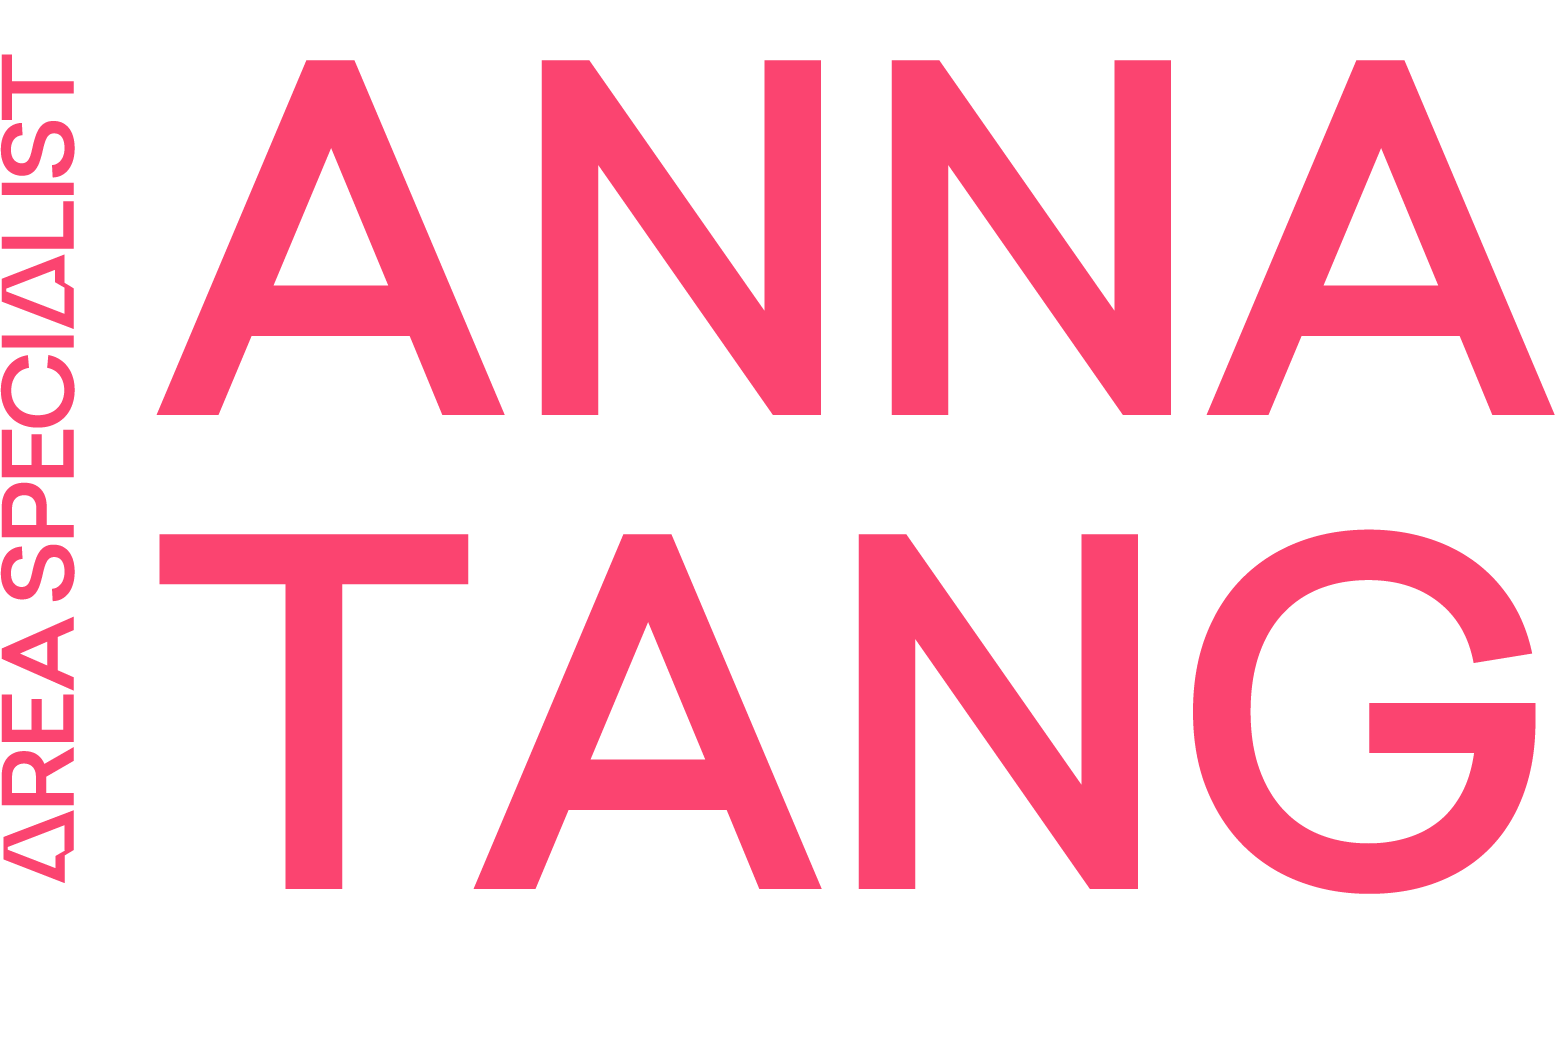 Anna's logo